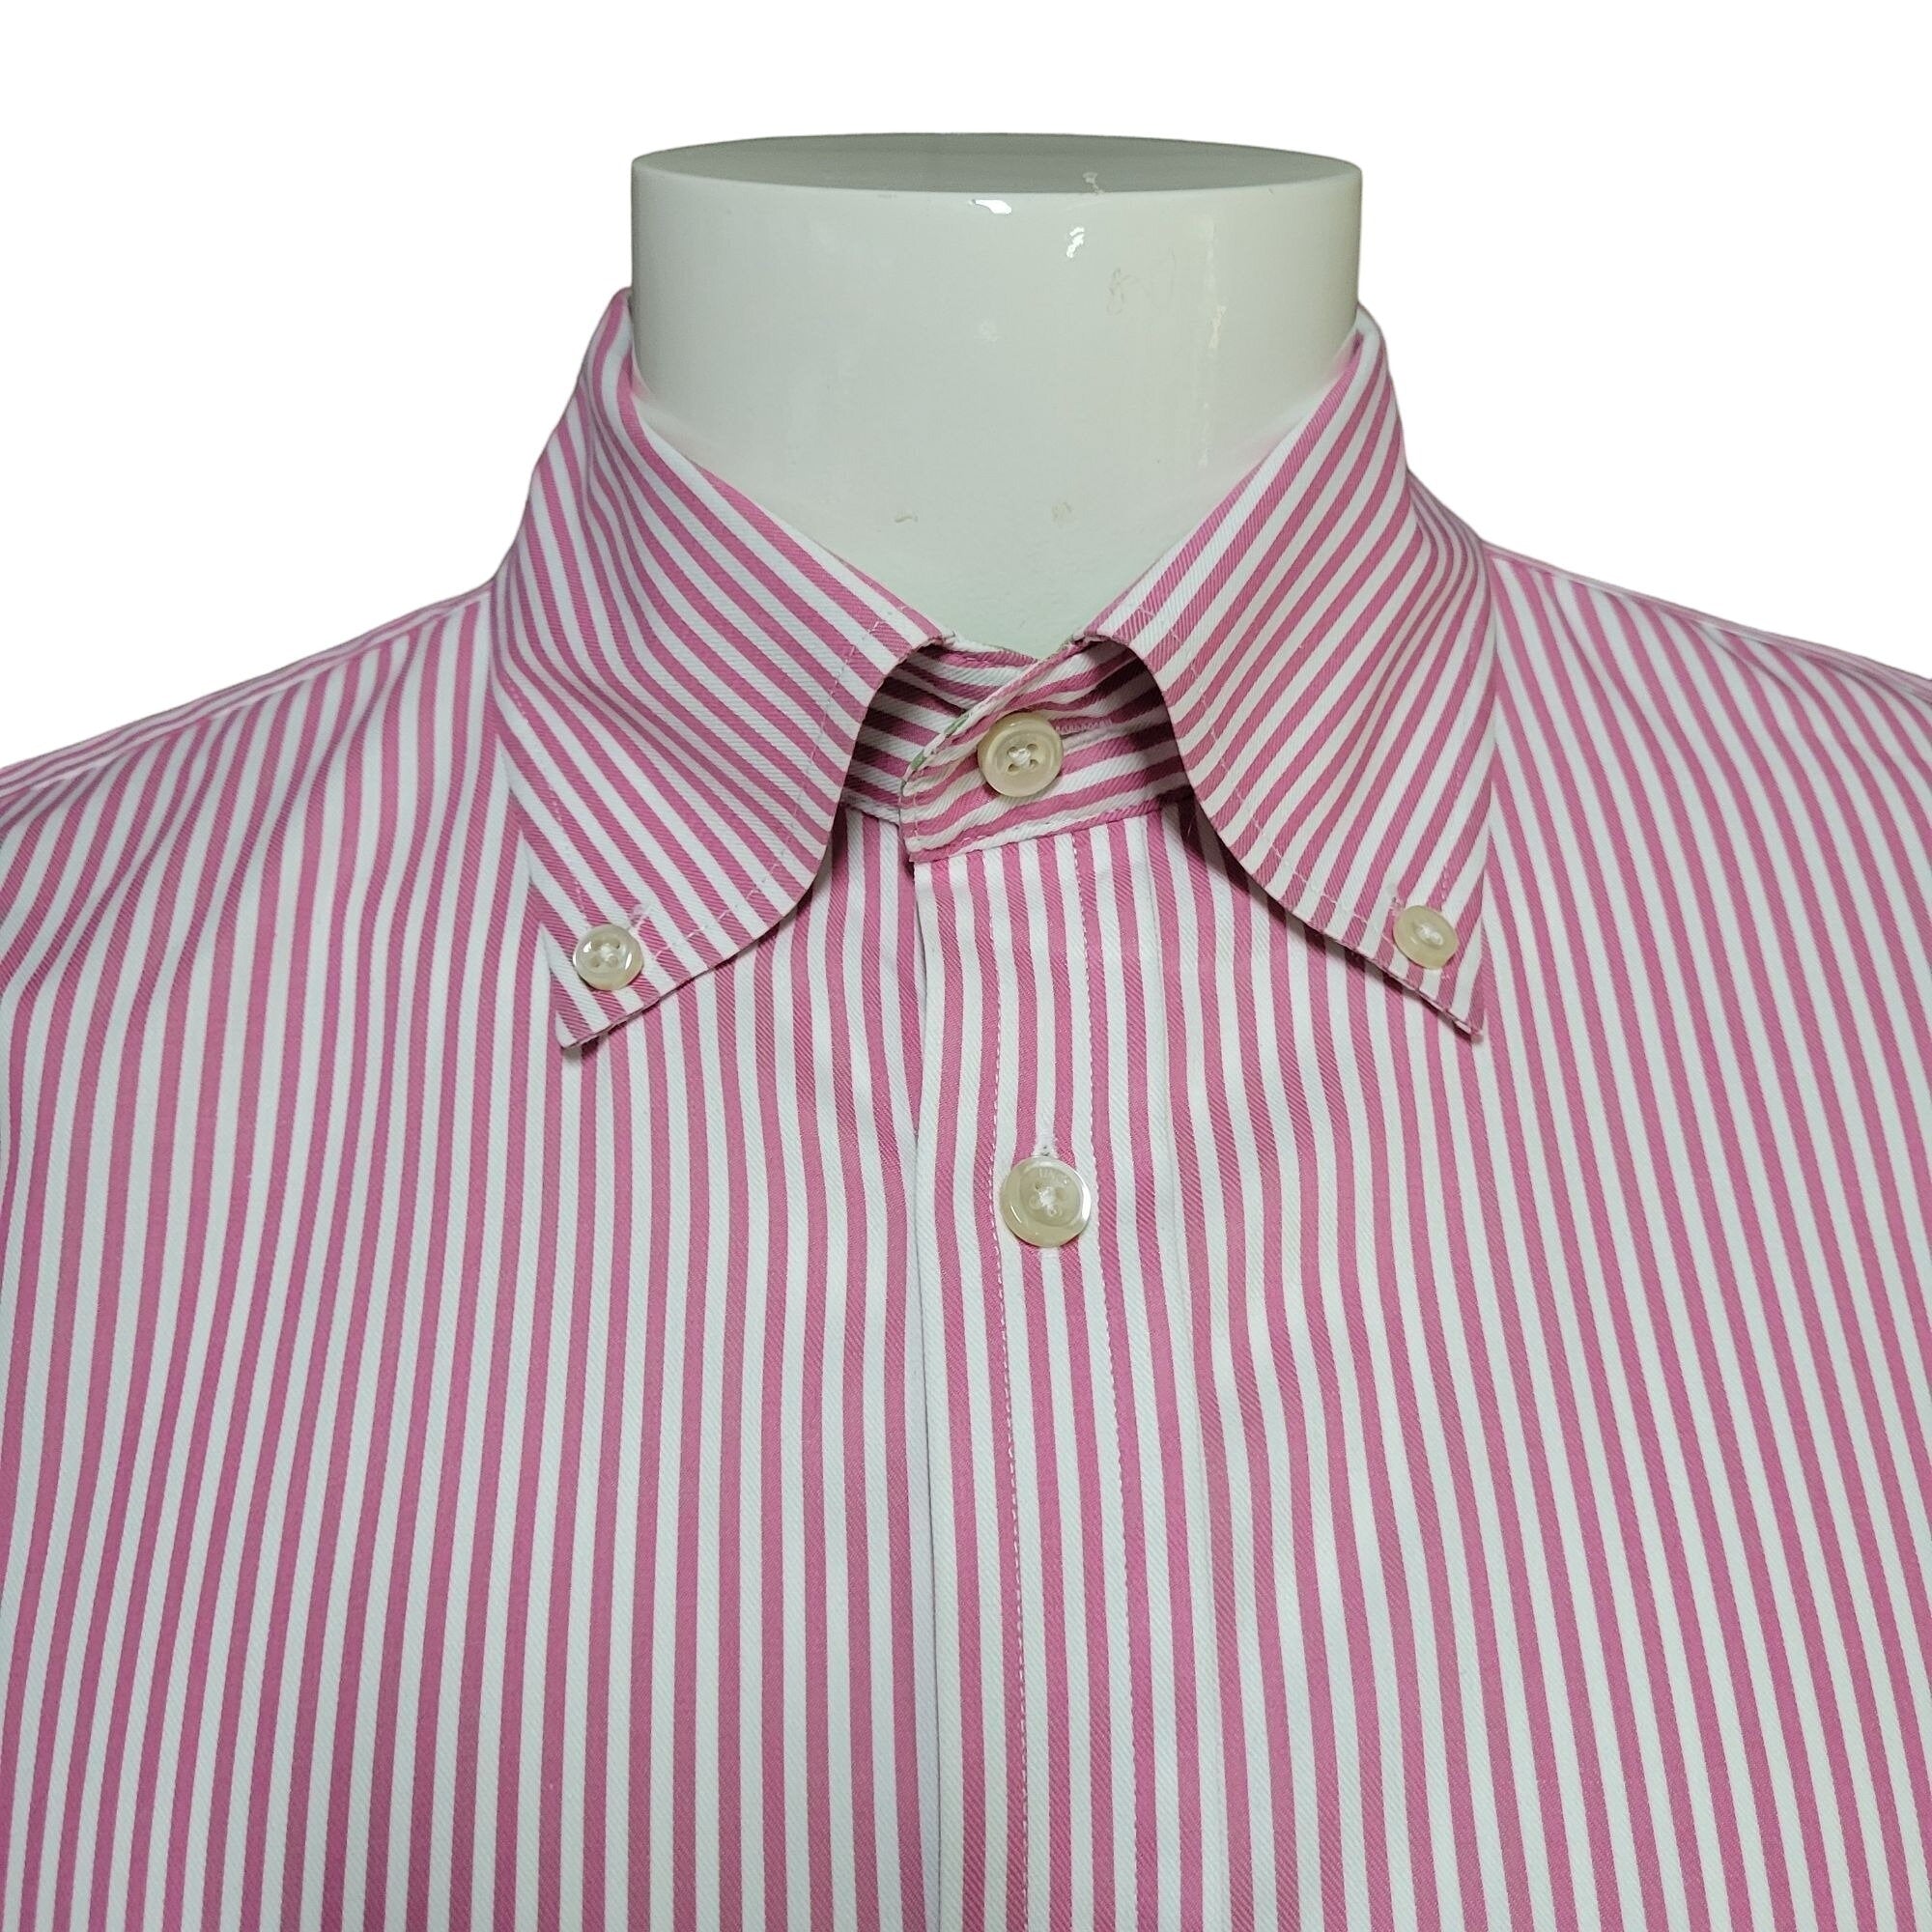 Lincs Men's Pink & White Striped Button Down Shirt. Size Large